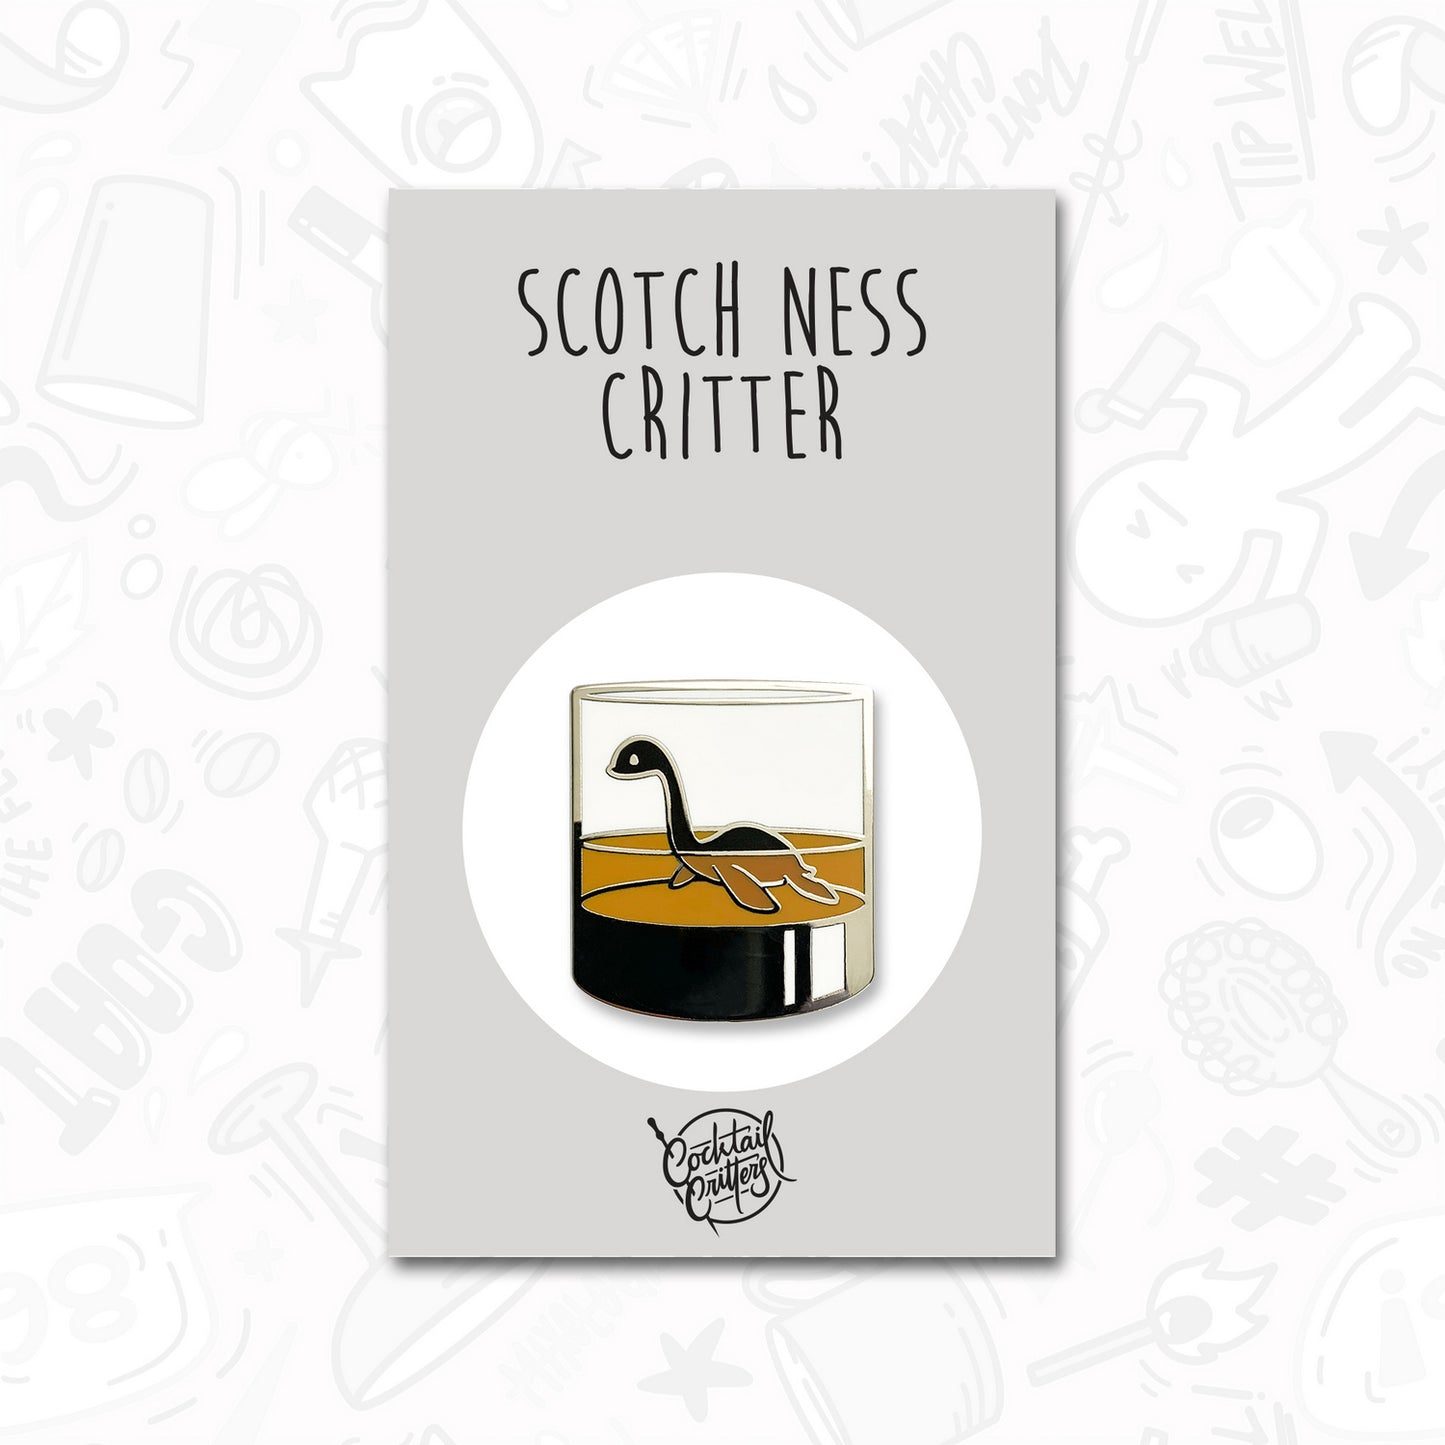 Scotch Ness Critter Pin